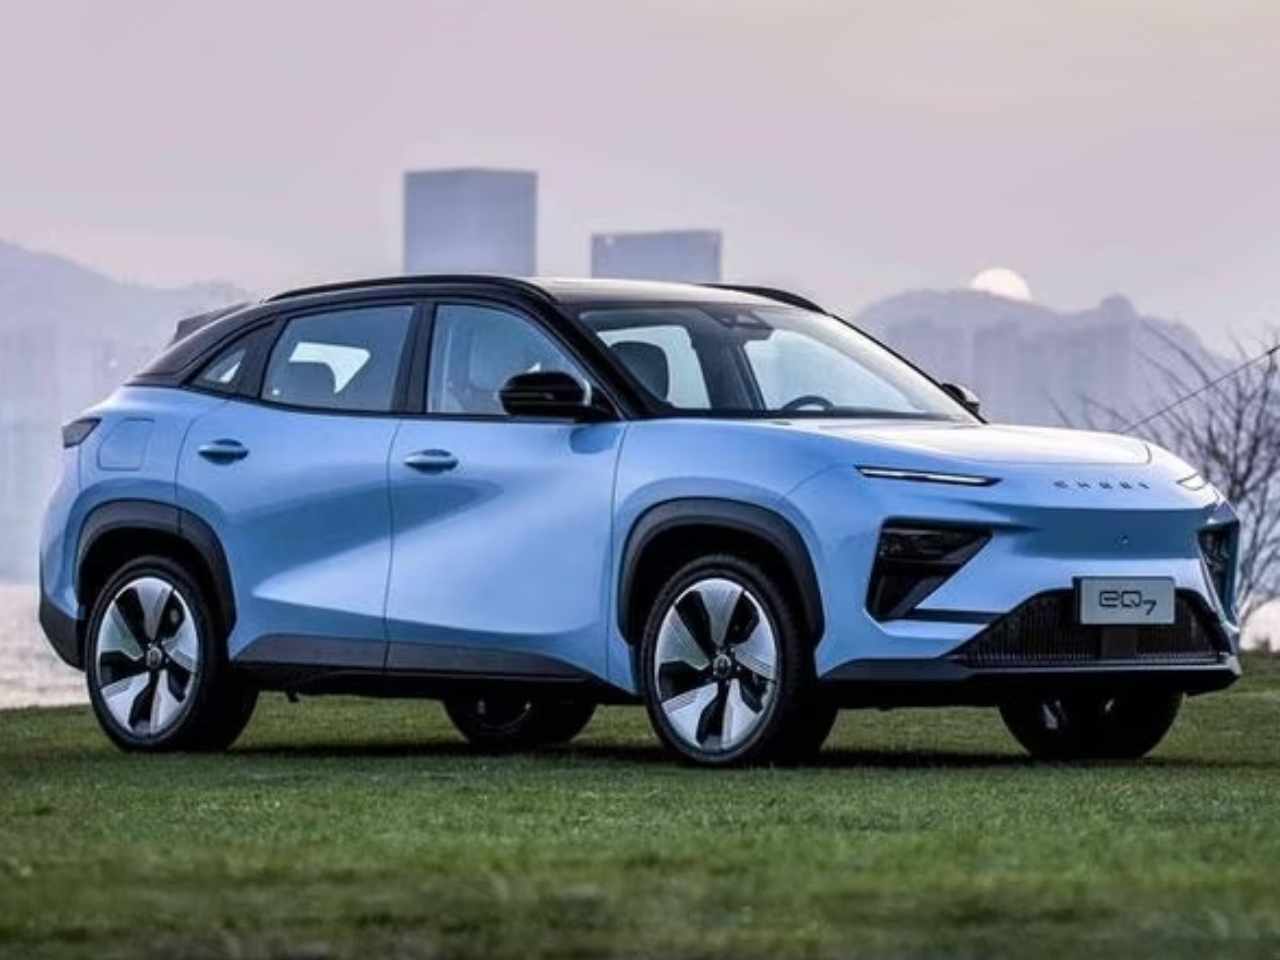 Chery eQ7  o novo SUV eltrico de porte mdio da marca chinesa que pode ter aspiraes globais